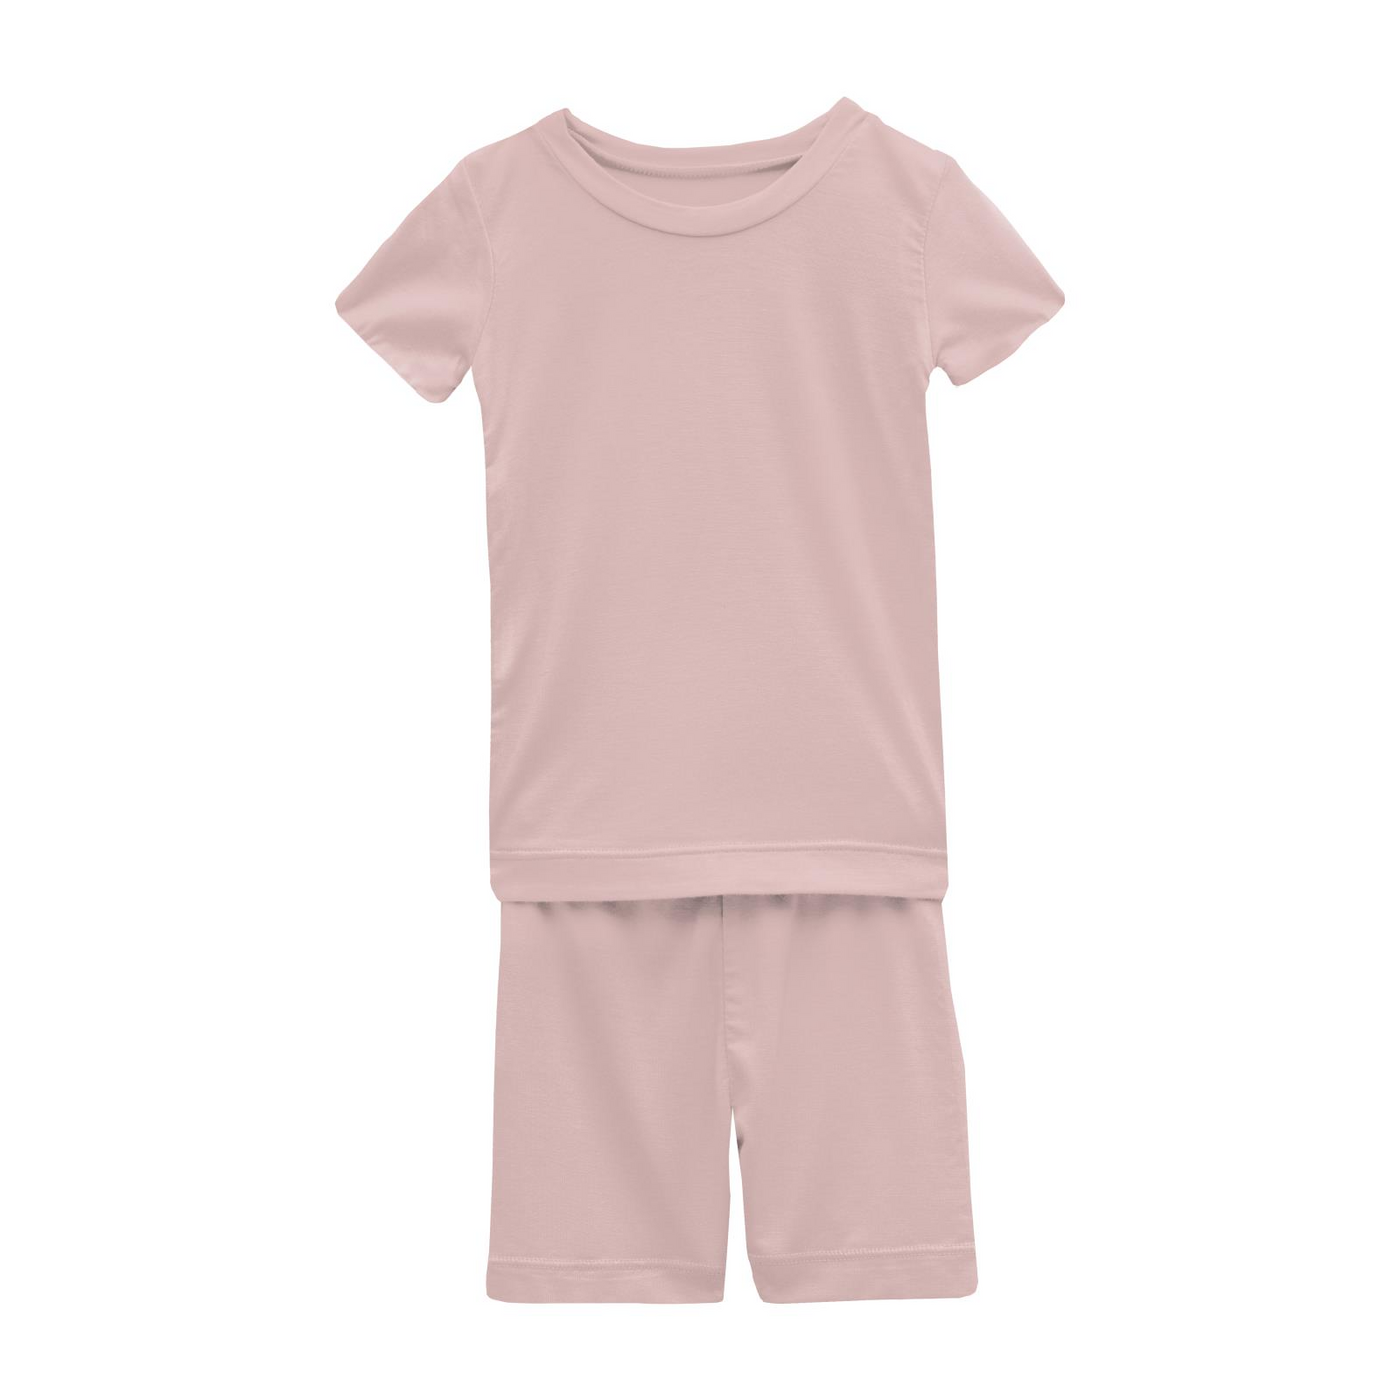 Kickee Pants Pajama Set with Shorts: Solid Baby Rose